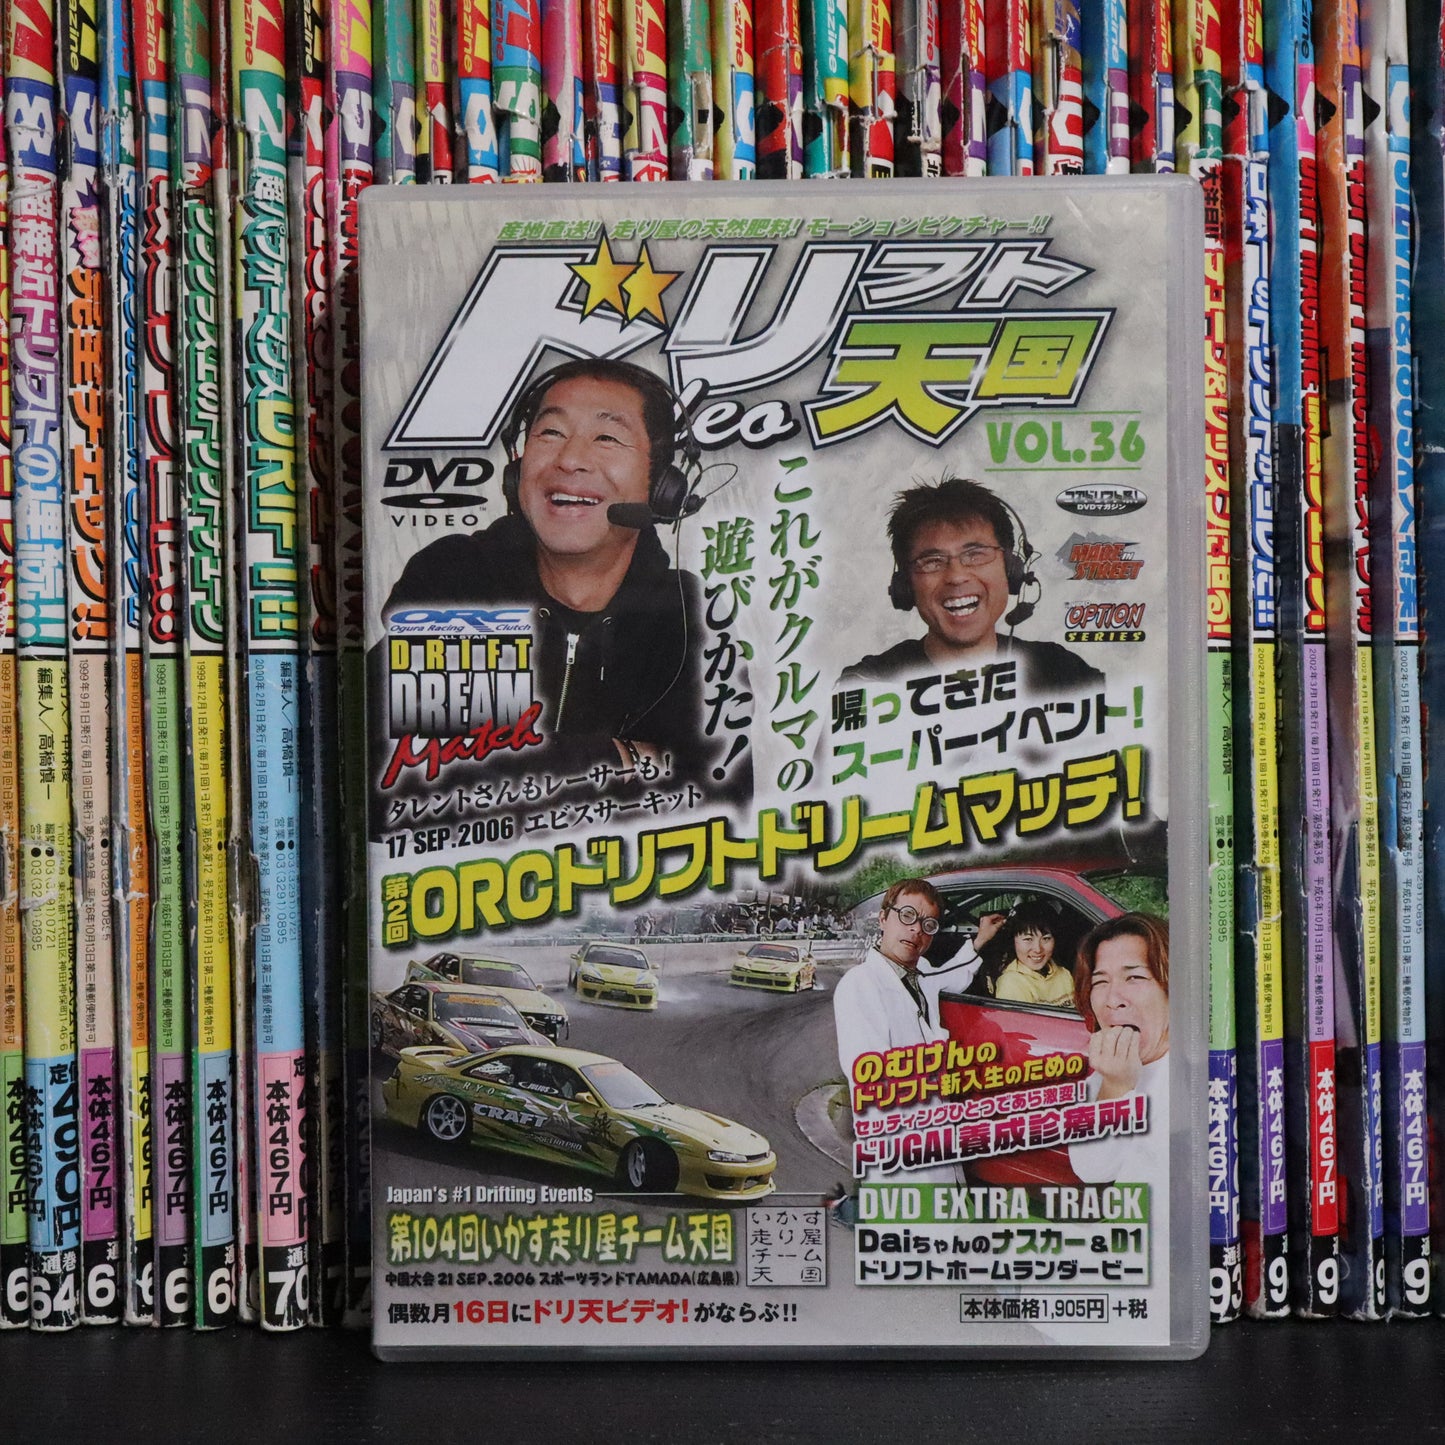 Drift Tengoku DVD Vol 36